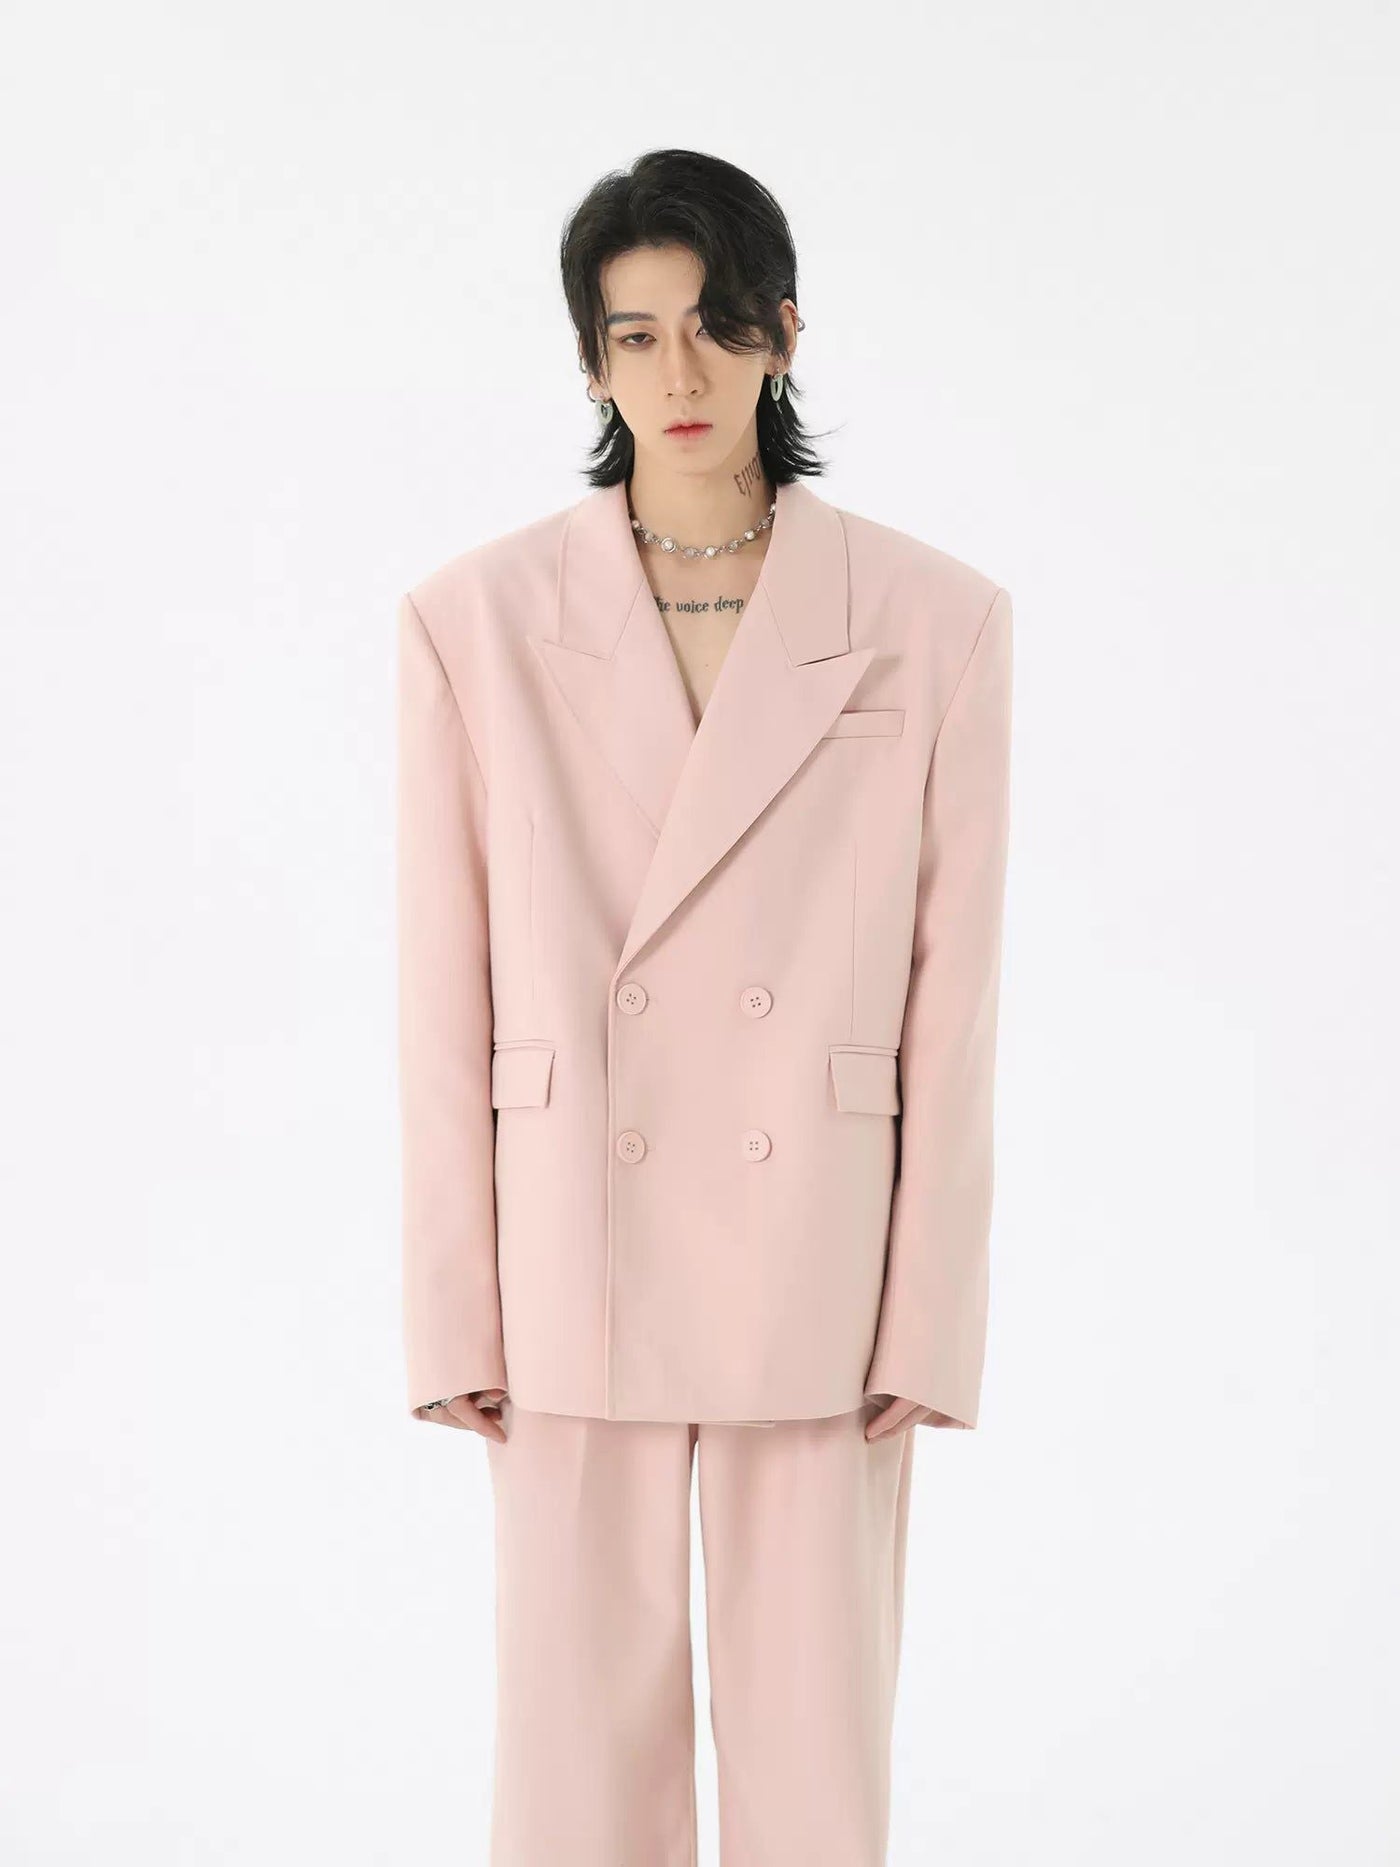 Peak Lapel Suit Blazer Korean Street Fashion Blazer By HARH Shop Online at OH Vault